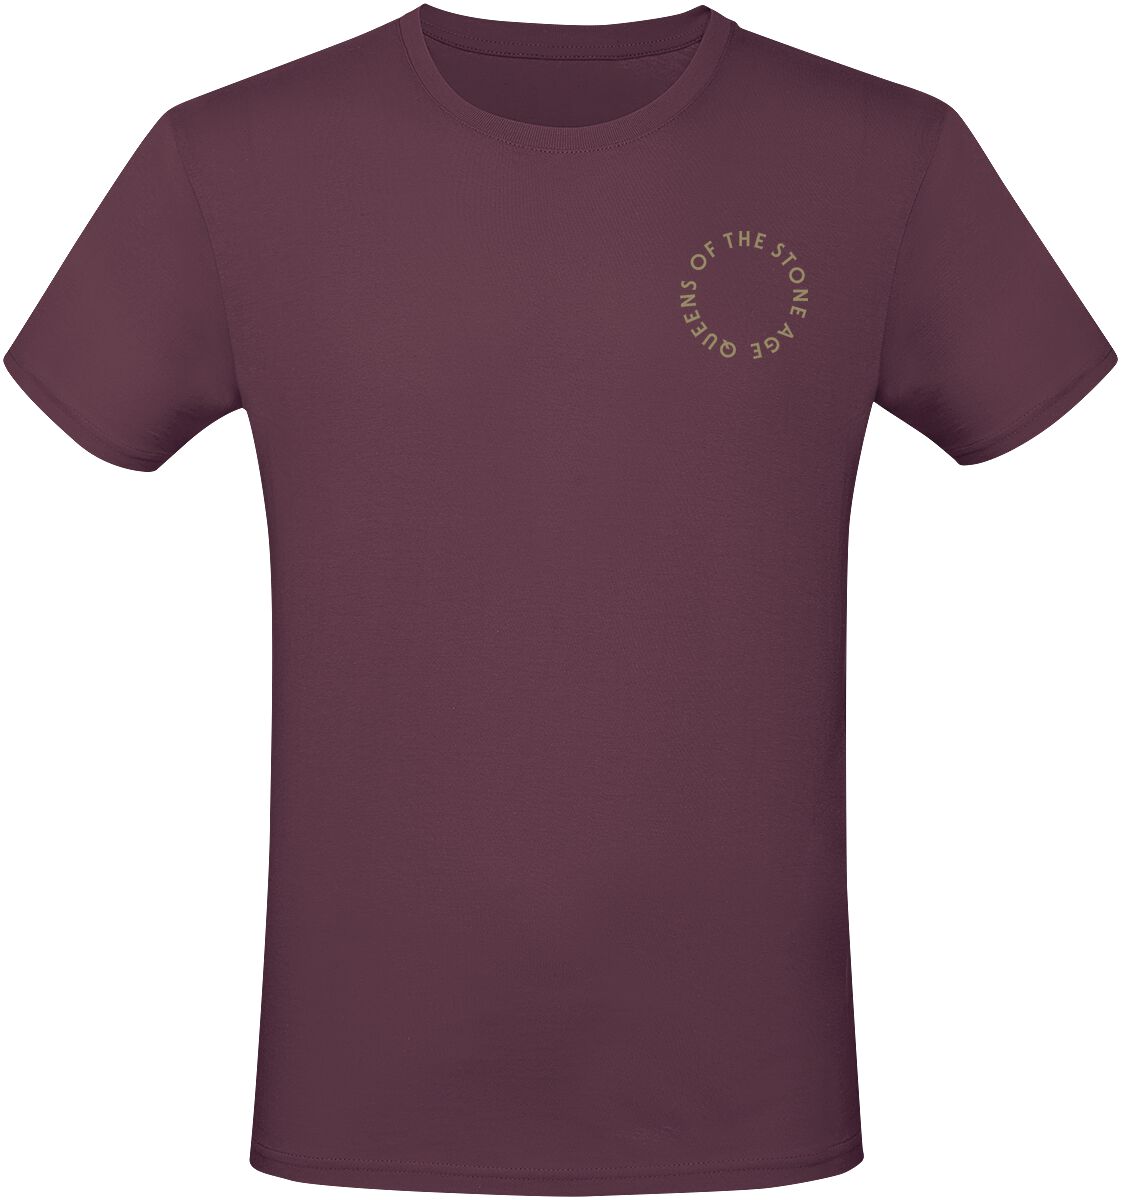 Queens Of The Stone Age T-Shirt - In Times New Roman - Snakes - S bis 3XL - für Männer - Größe XXL - burgund  - Lizenziertes Merchandise!